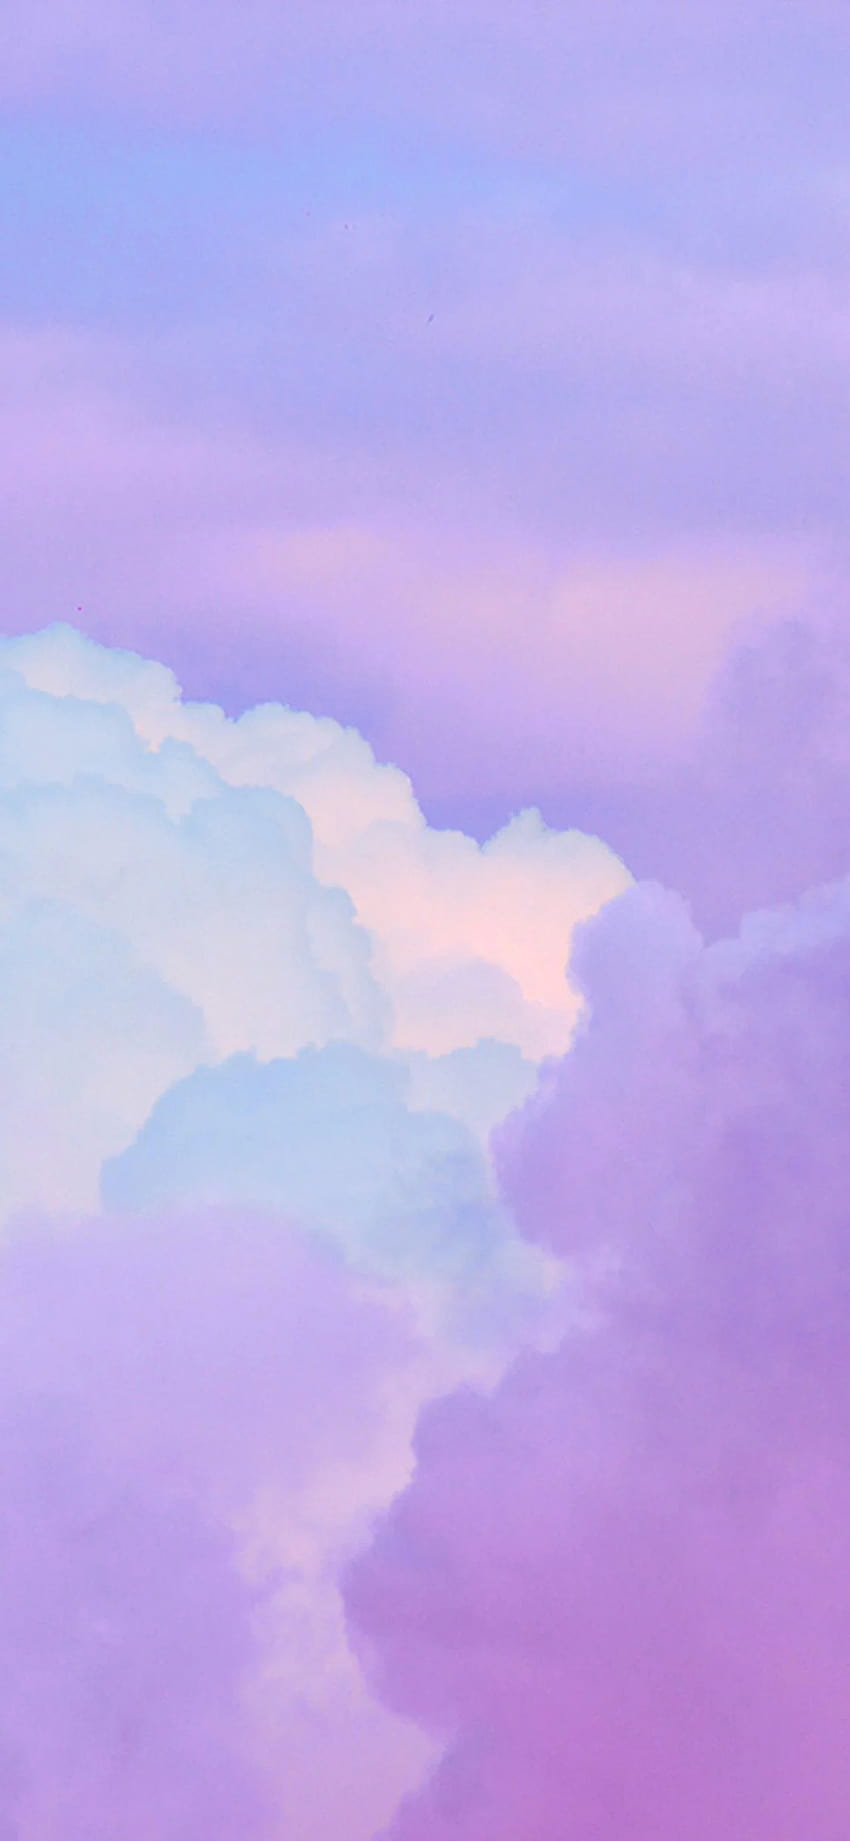 bj18, awan ungu merah jambu iphone wallpaper ponsel HD